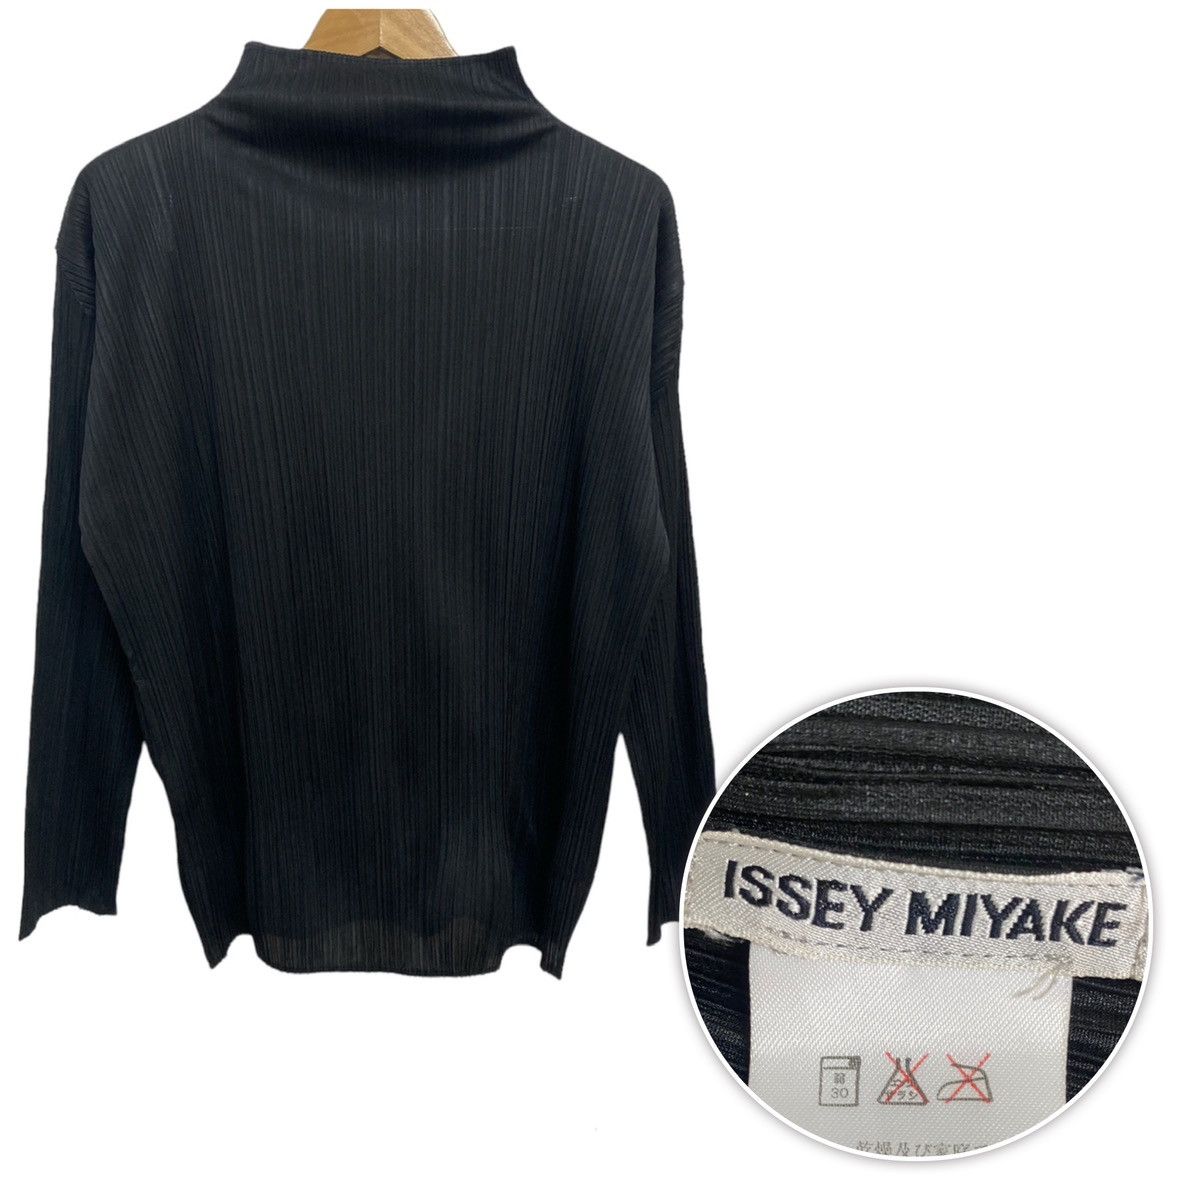 Vintage Issey Miyake Pleats Turtleneck - 1